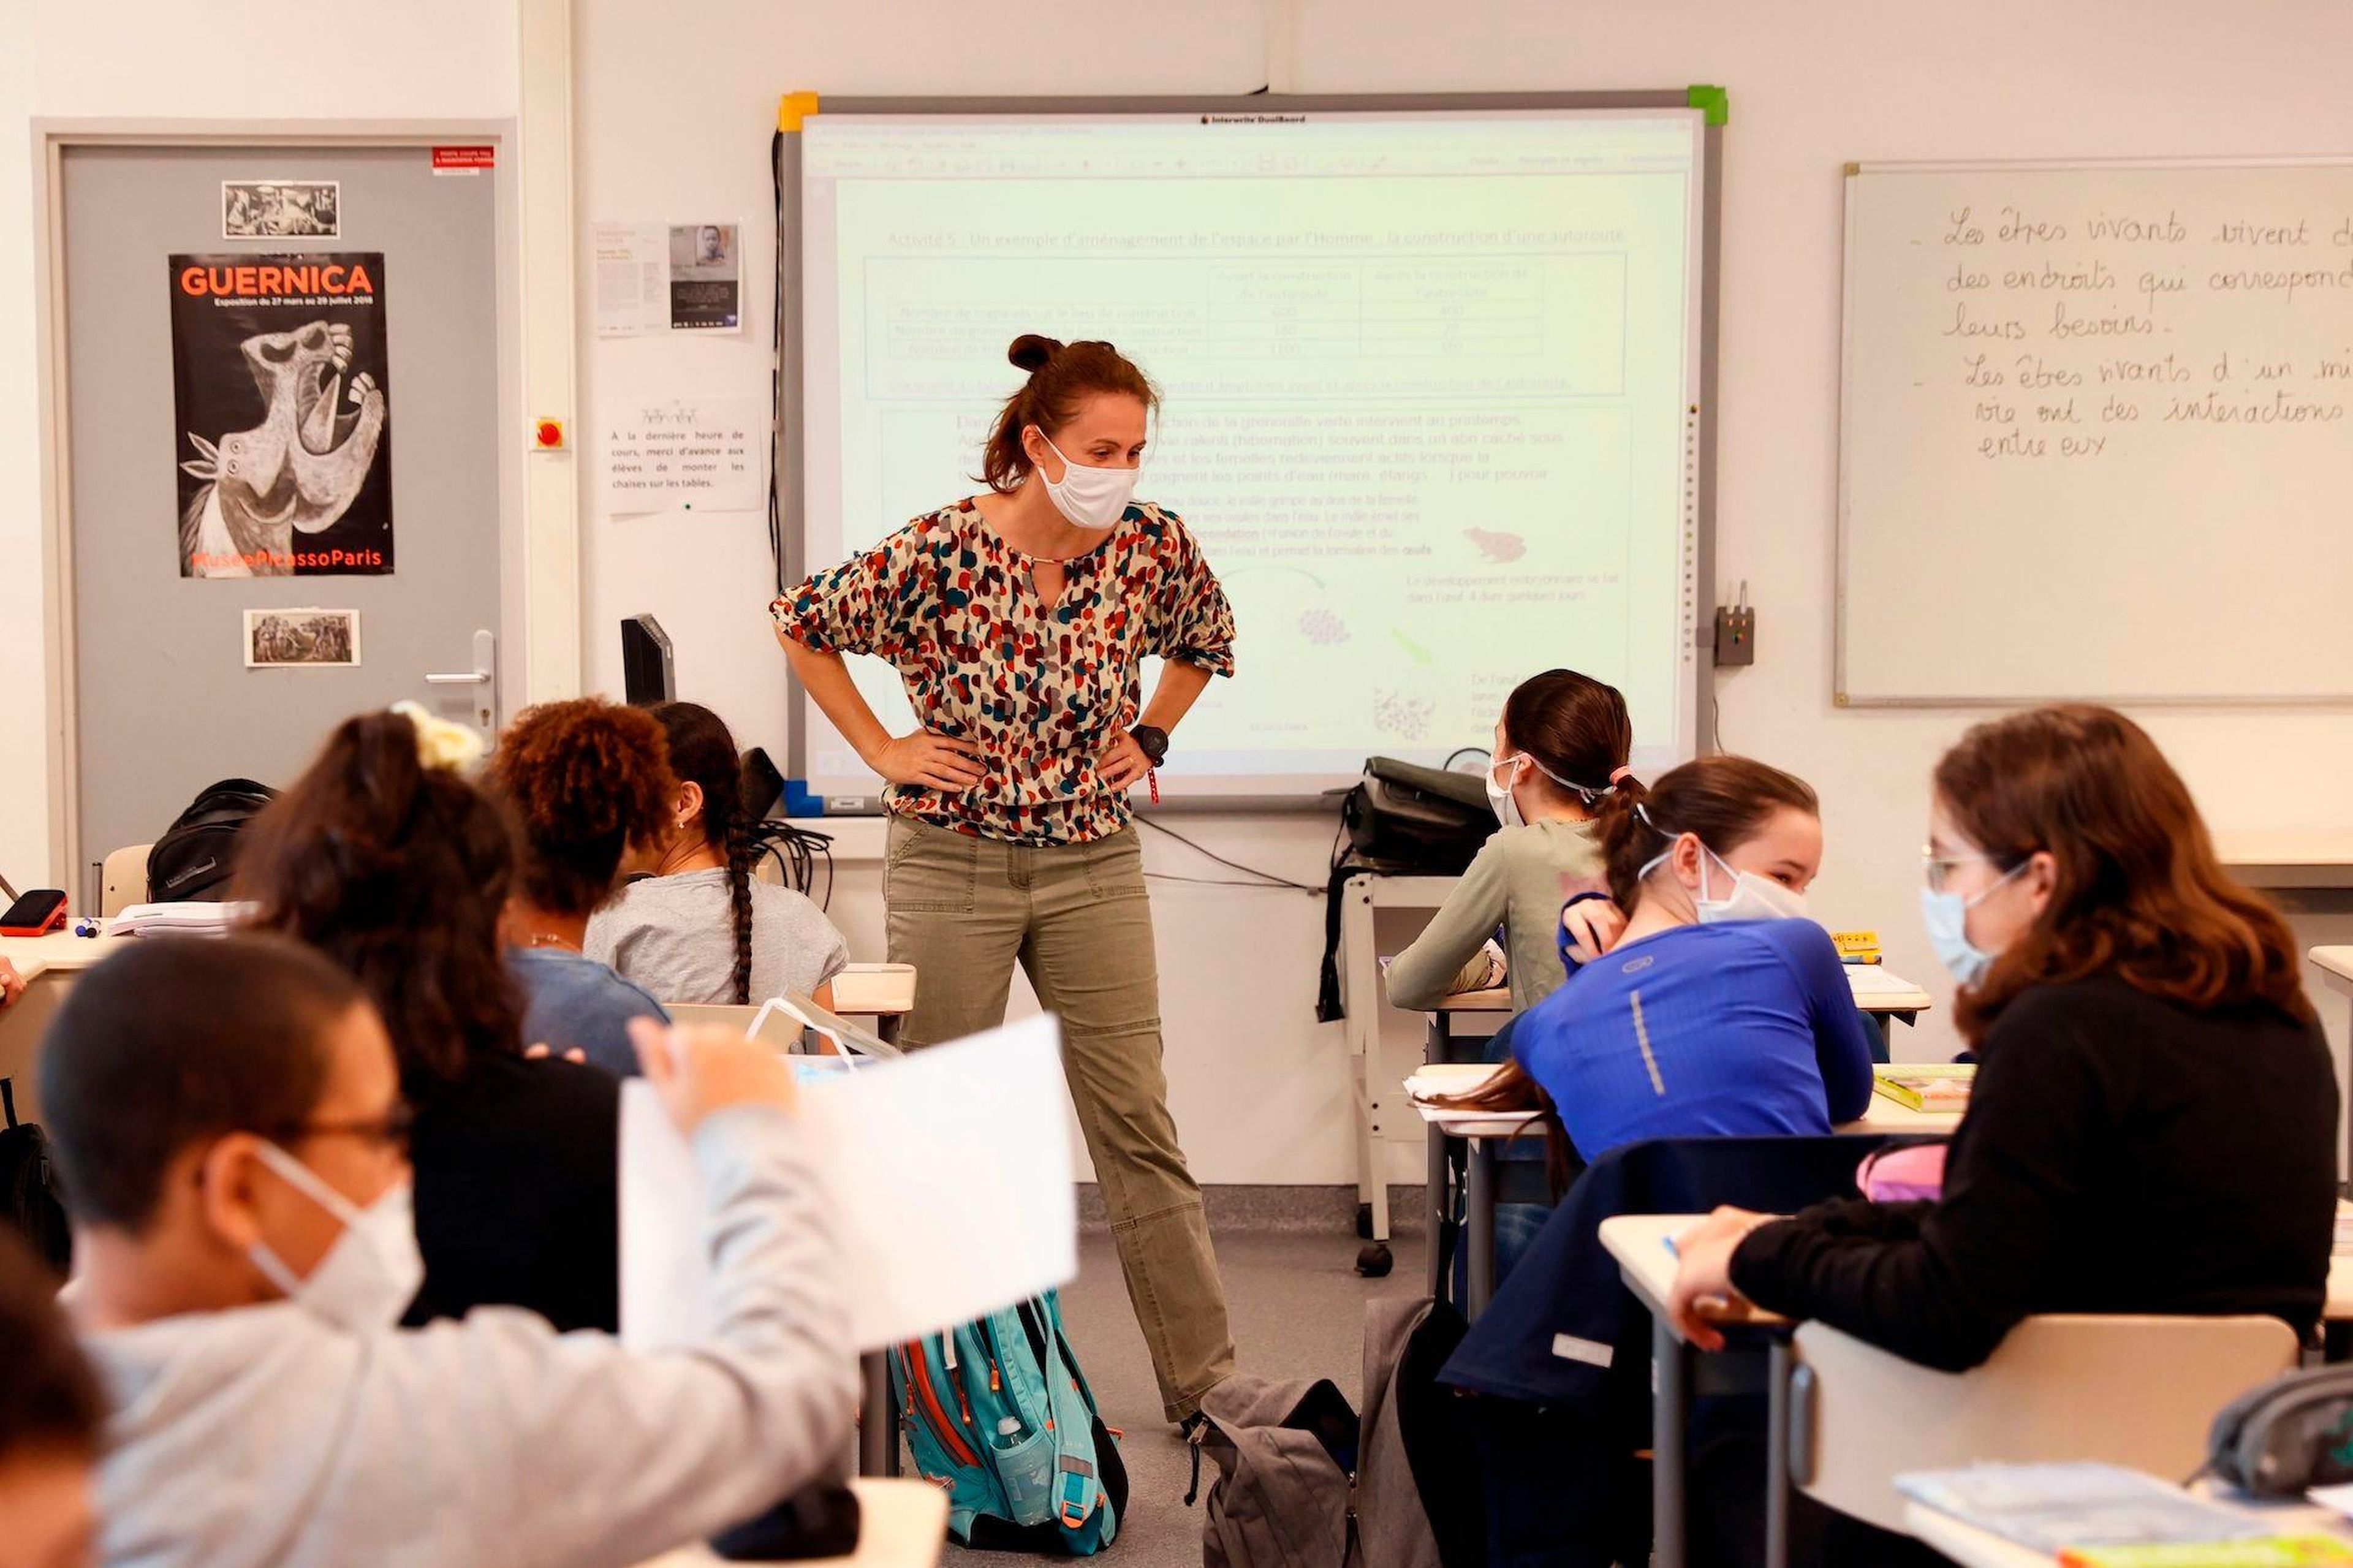 Los alumnos de la escuela secundaria asisten a una clase en su aula, el 22 de junio de 2020 en Boulogne-Billancourt, en las afueras de París